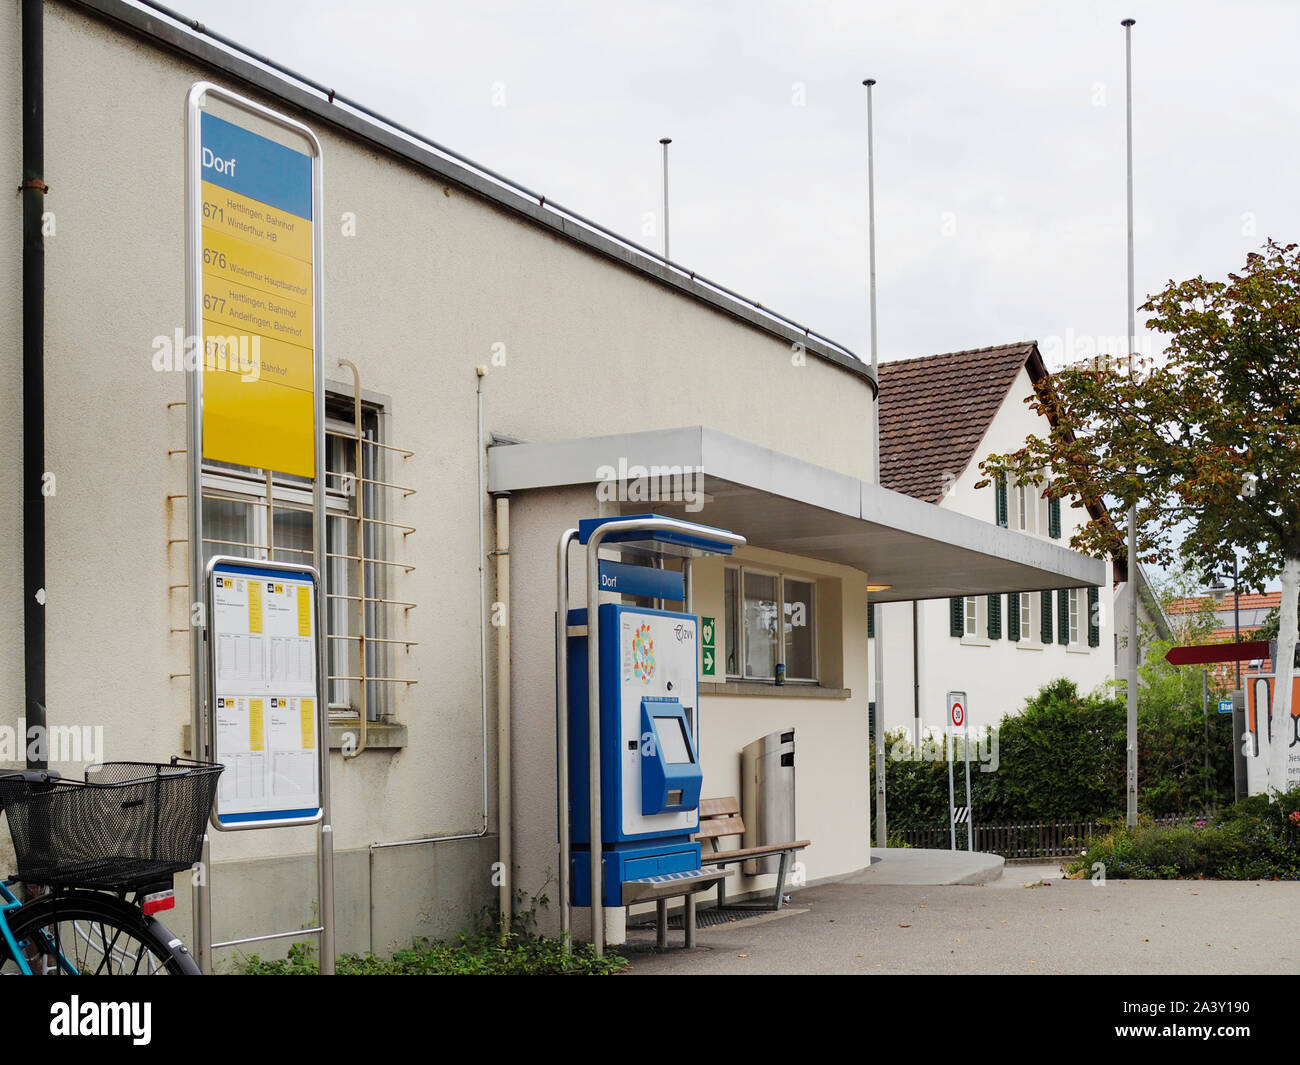 Bushaltestelle Dorf dans Hettlingen ZH, Suisse Banque D'Images